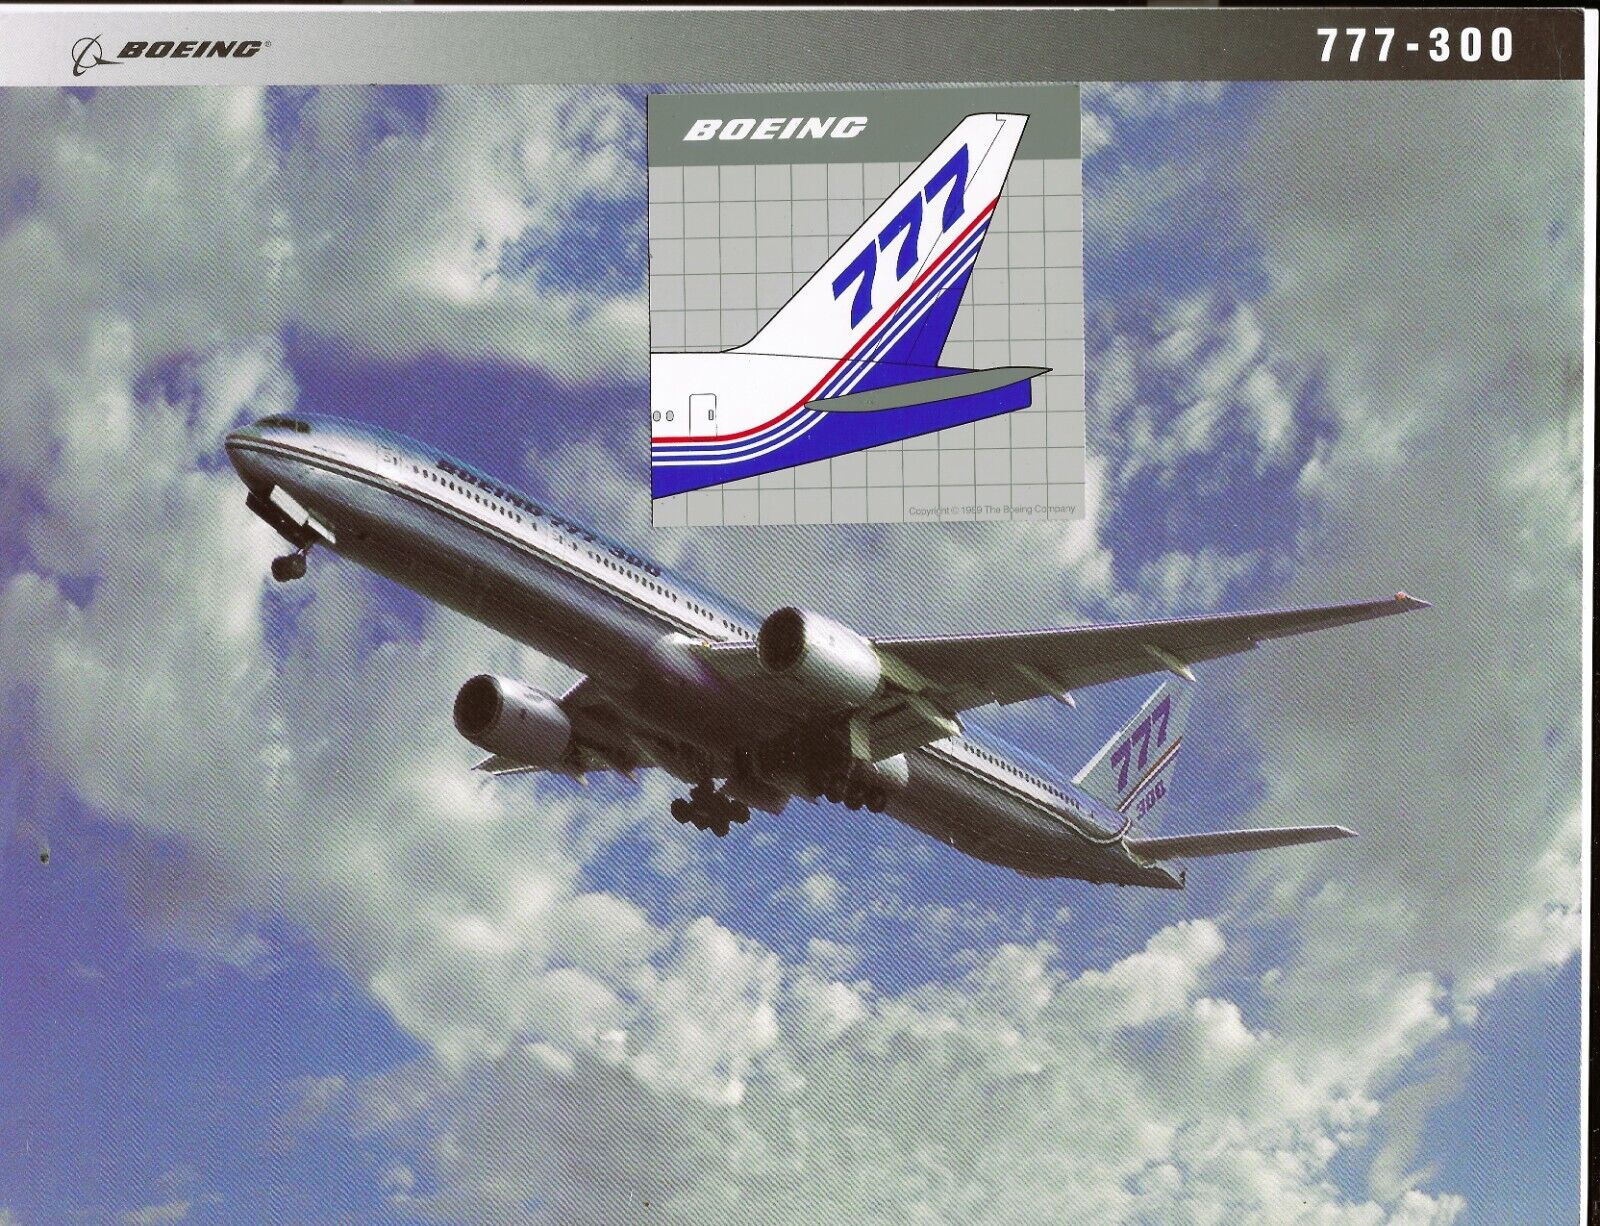 Boeing 777-300 photo data card & Boeing 777 Tail Sticker